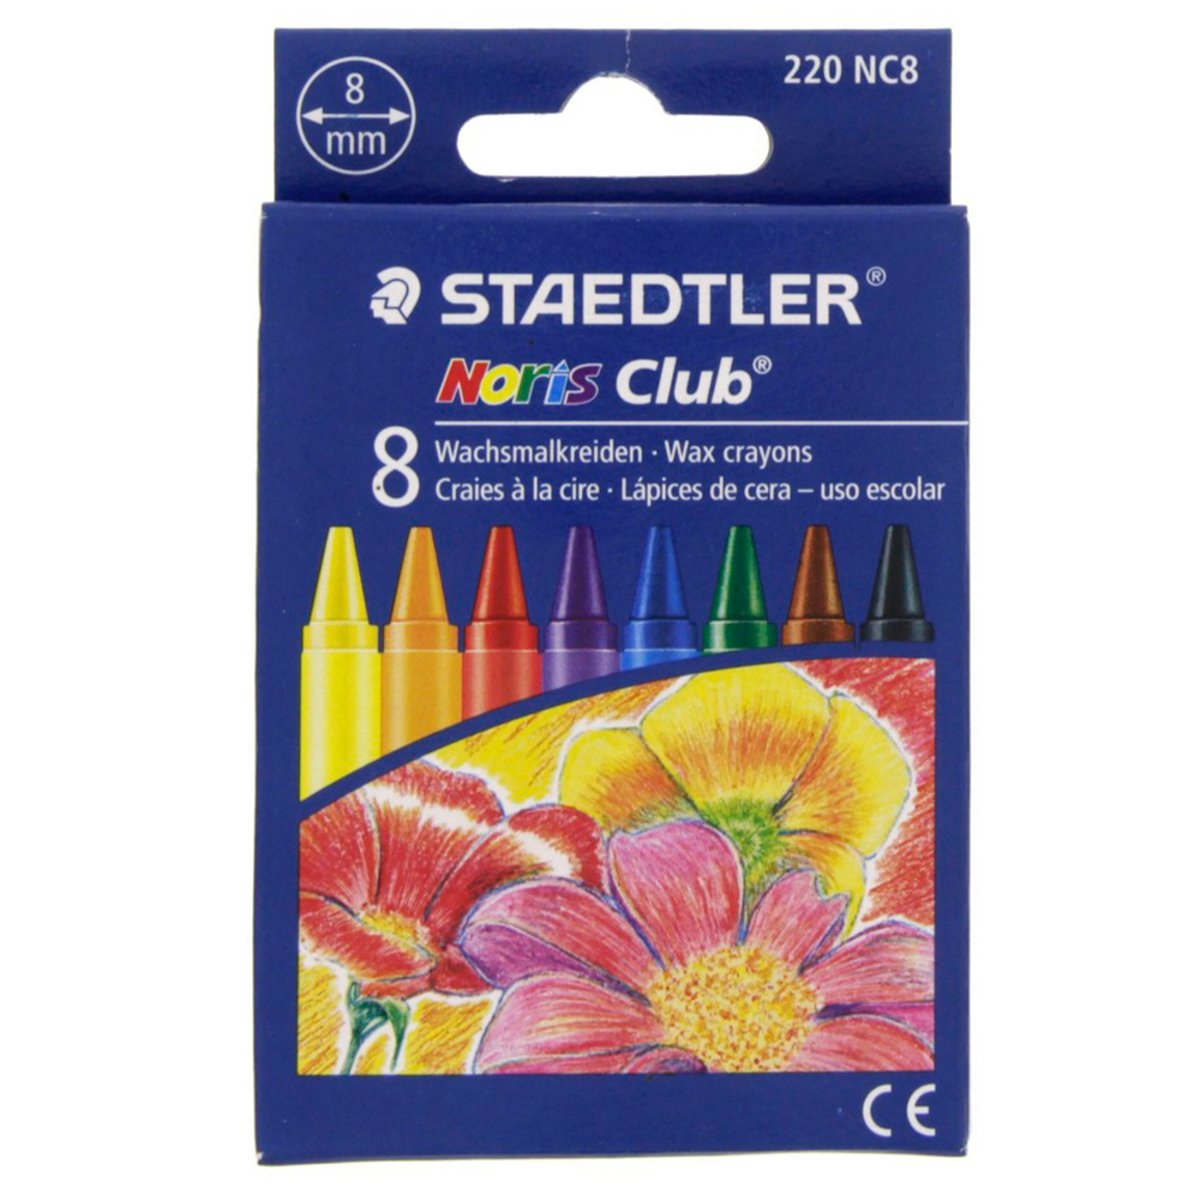 Staedtler Noris Club Wax Crayons 220NC8 8Piece